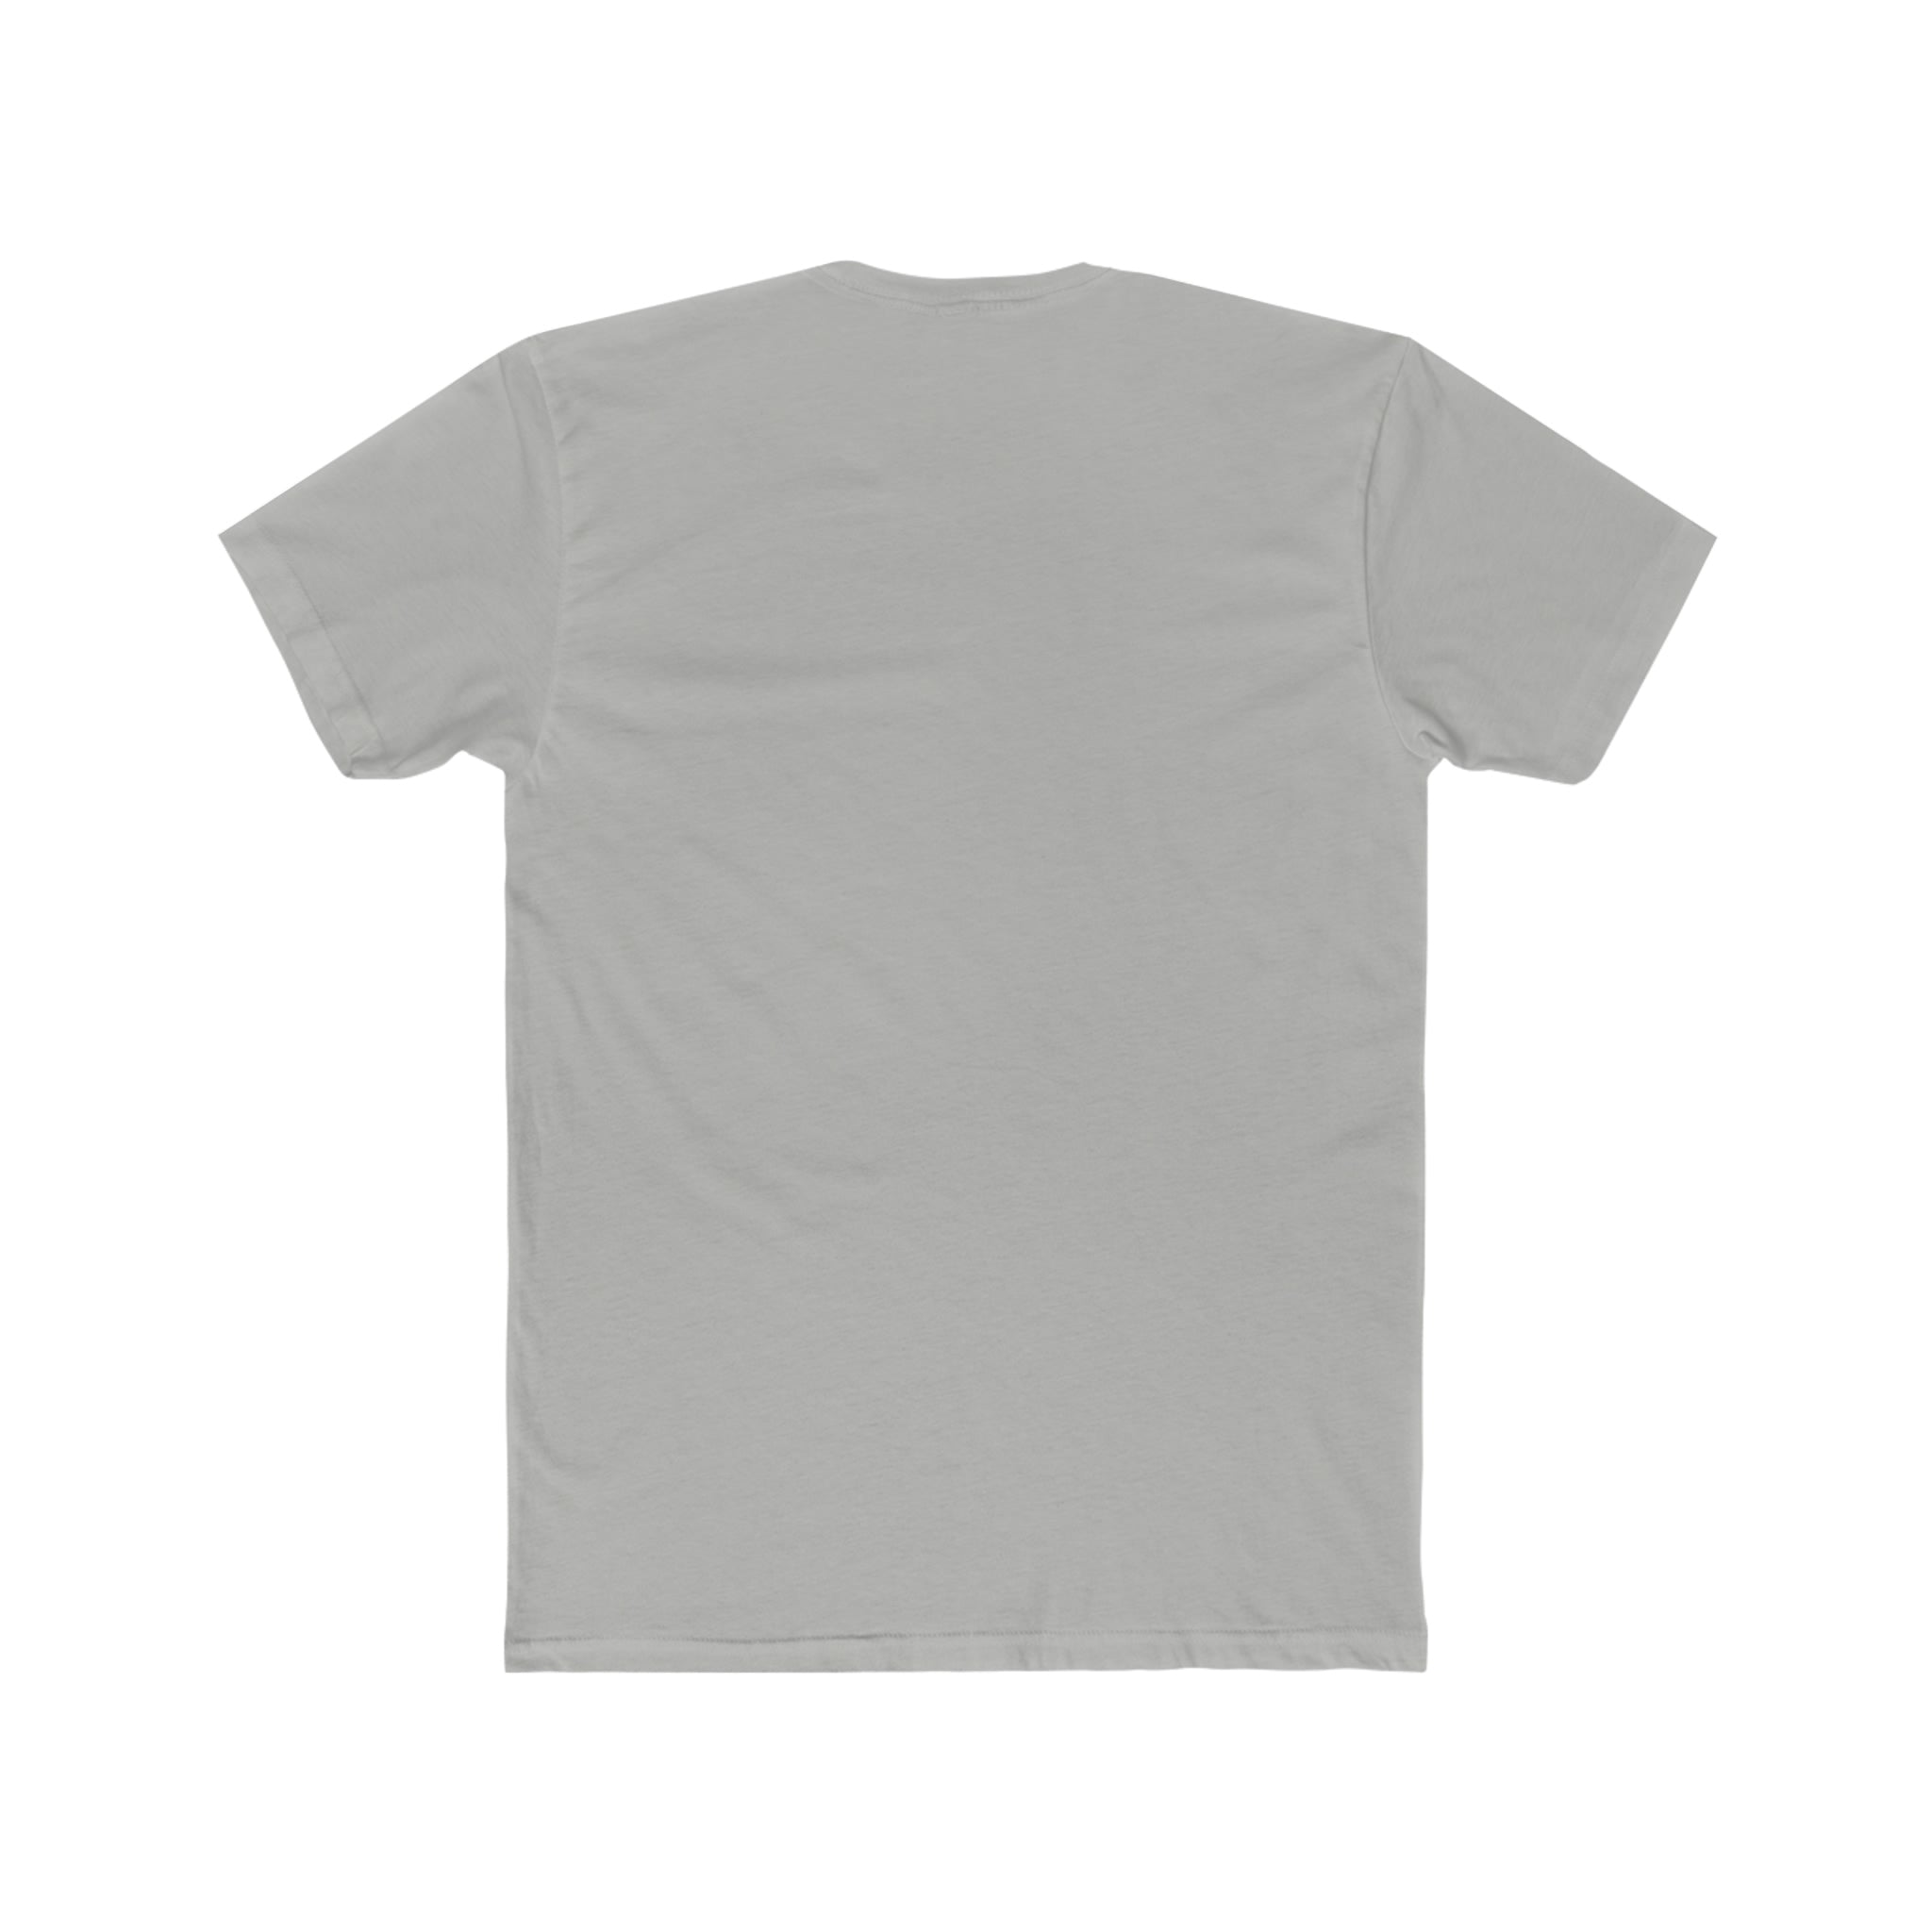 Topdad Deluxe Unisex T-shirt